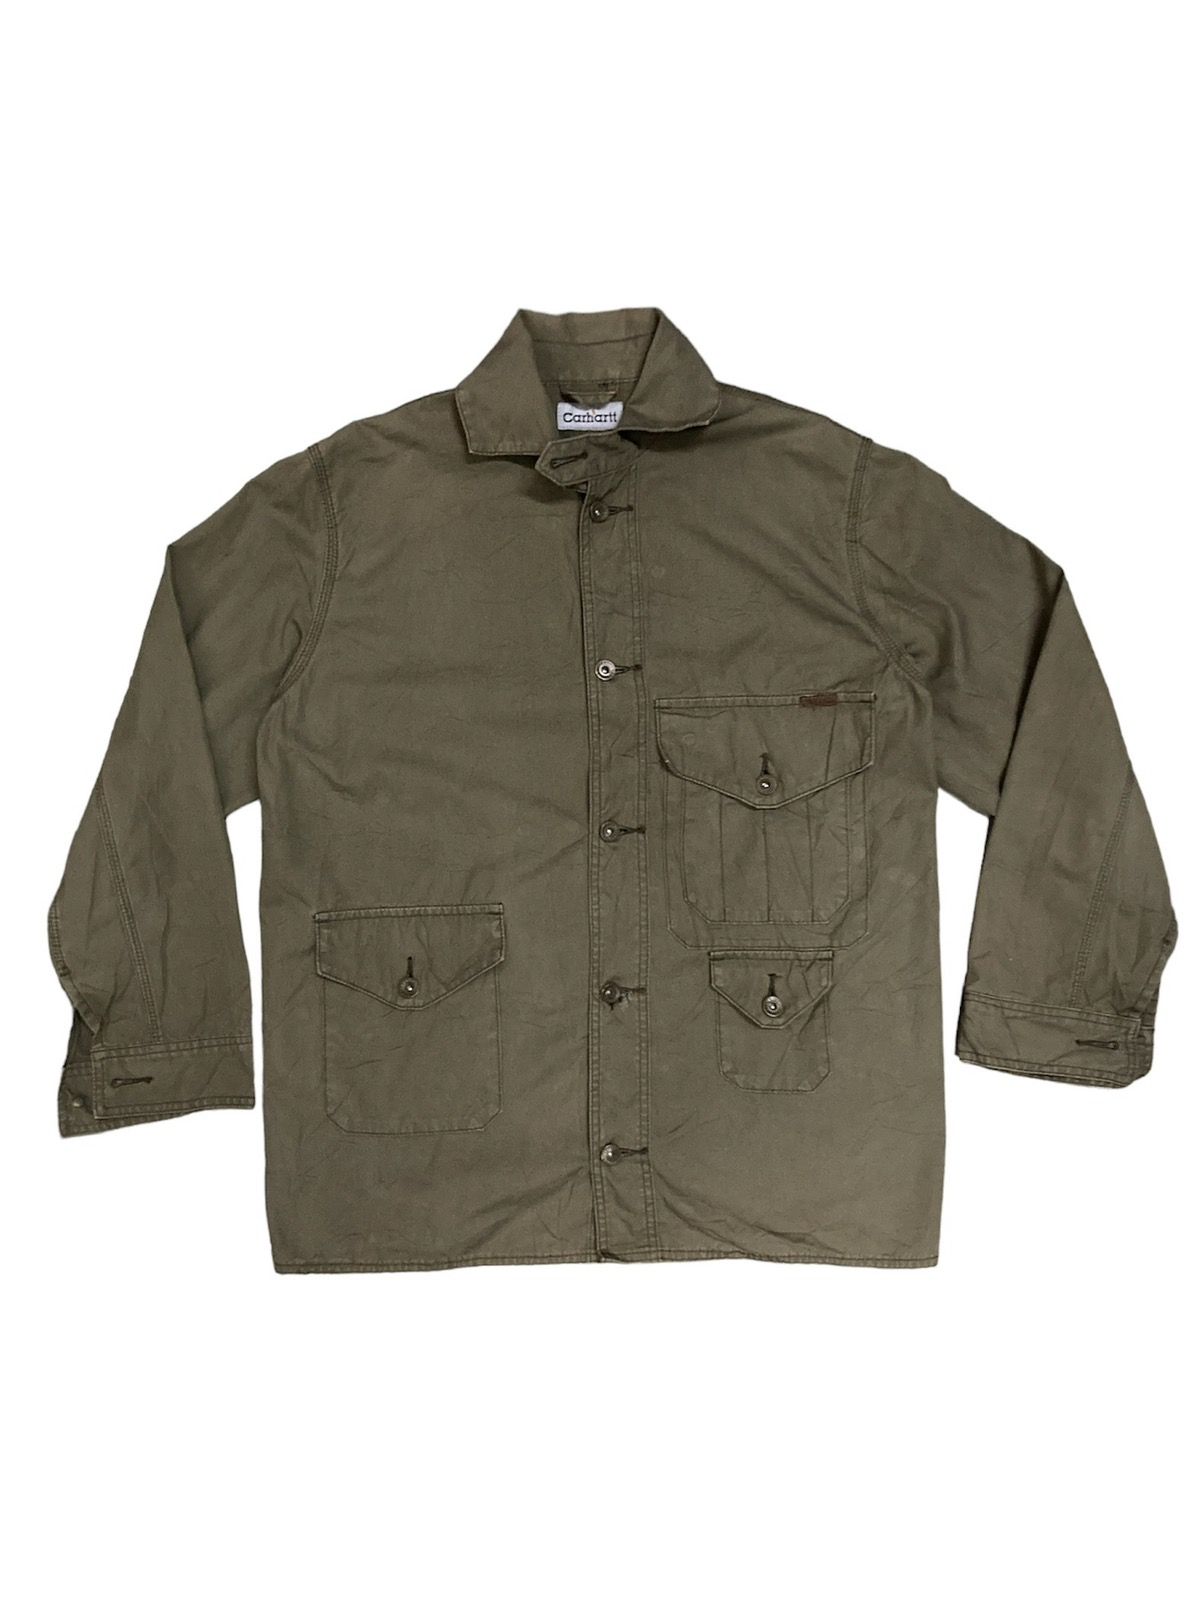 Carhartt Button Up Long Sleeve Shirt - 4